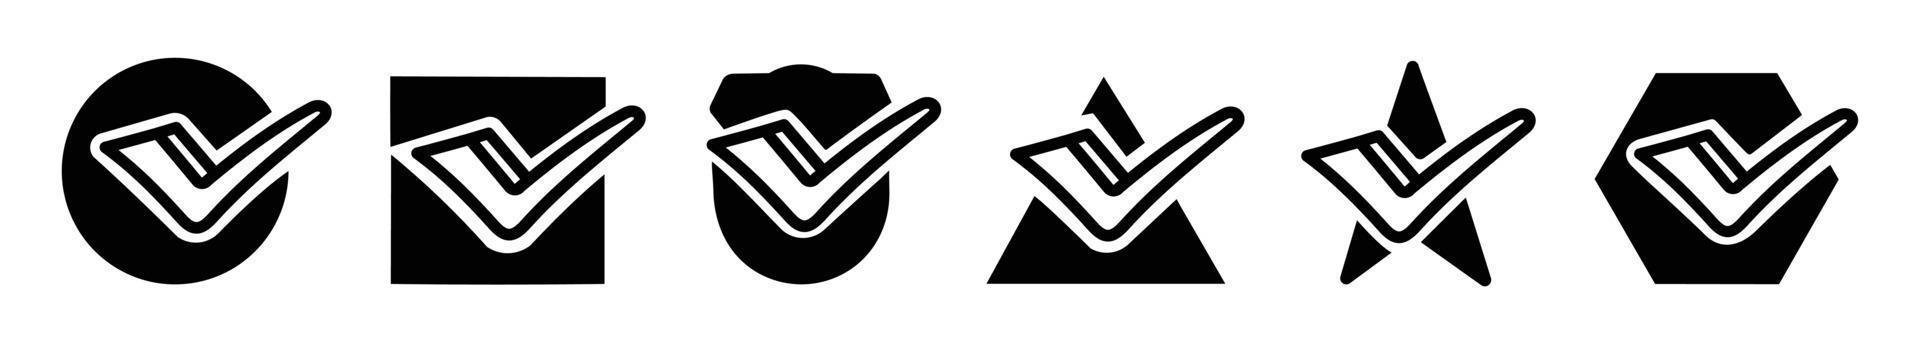 set di segni di spunta vettore icone. set di icone segno di spunta nero isolato su sfondo bianco.